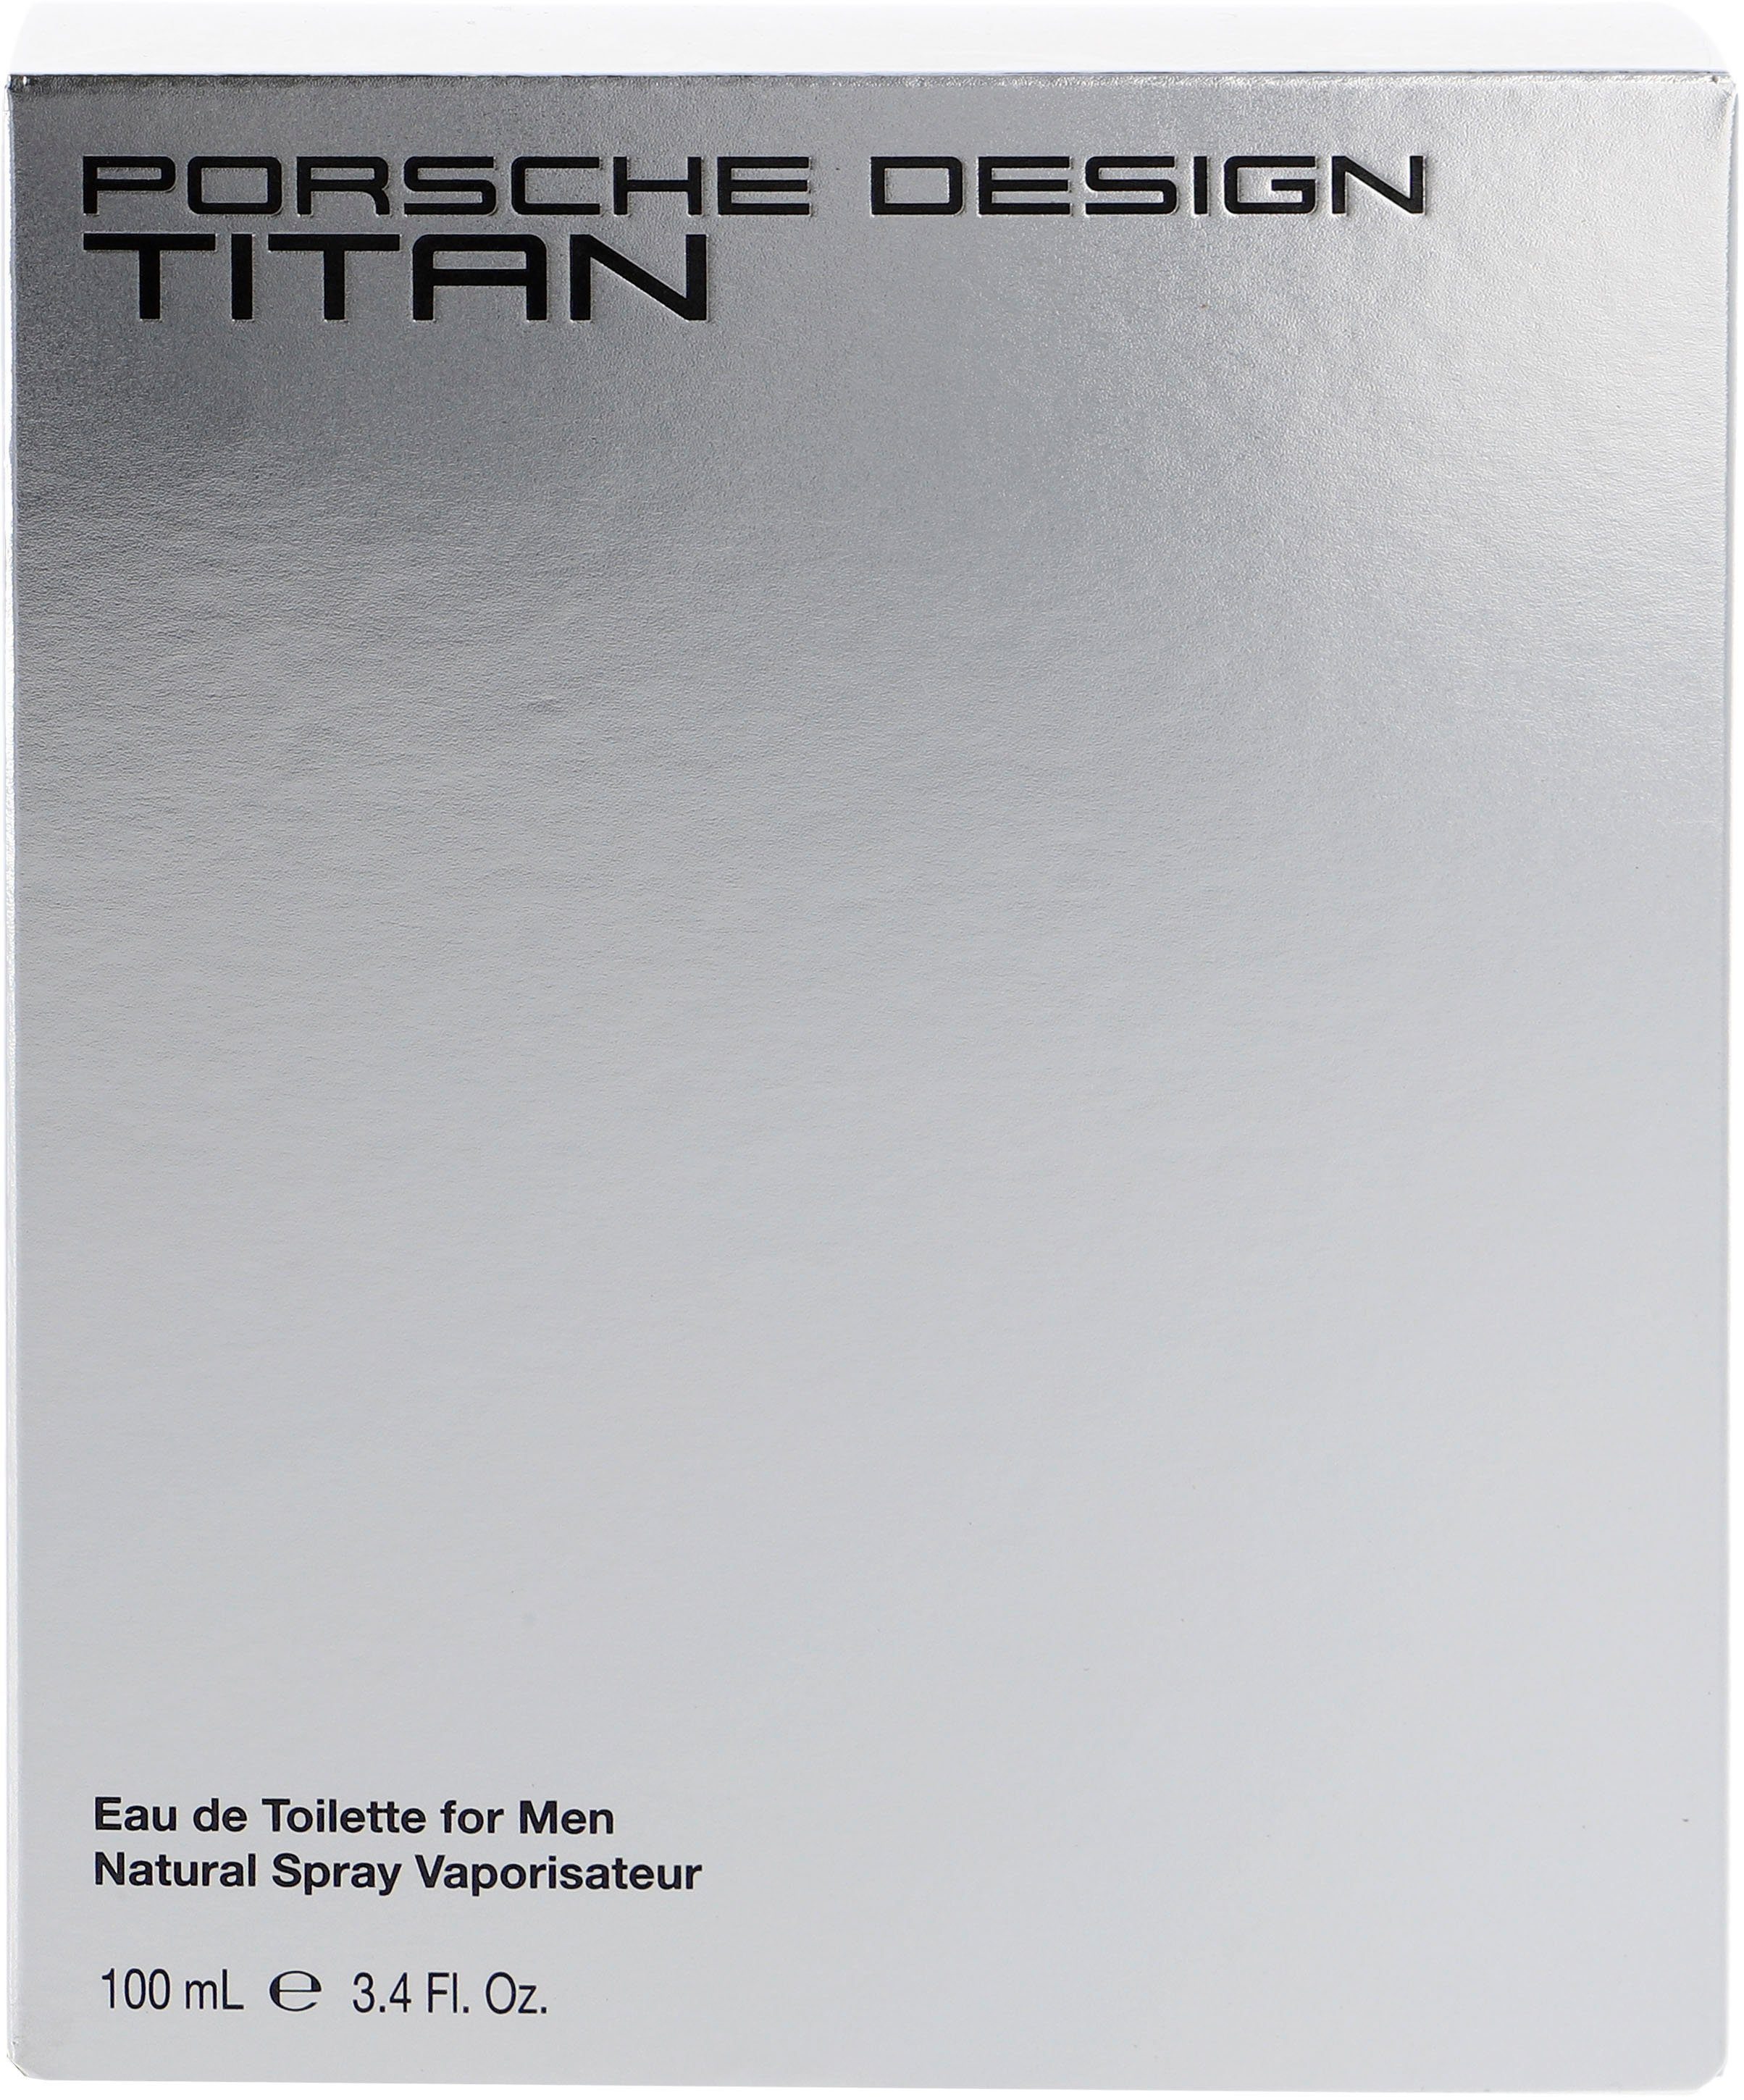 Design Titan PORSCHE Toilette Eau de